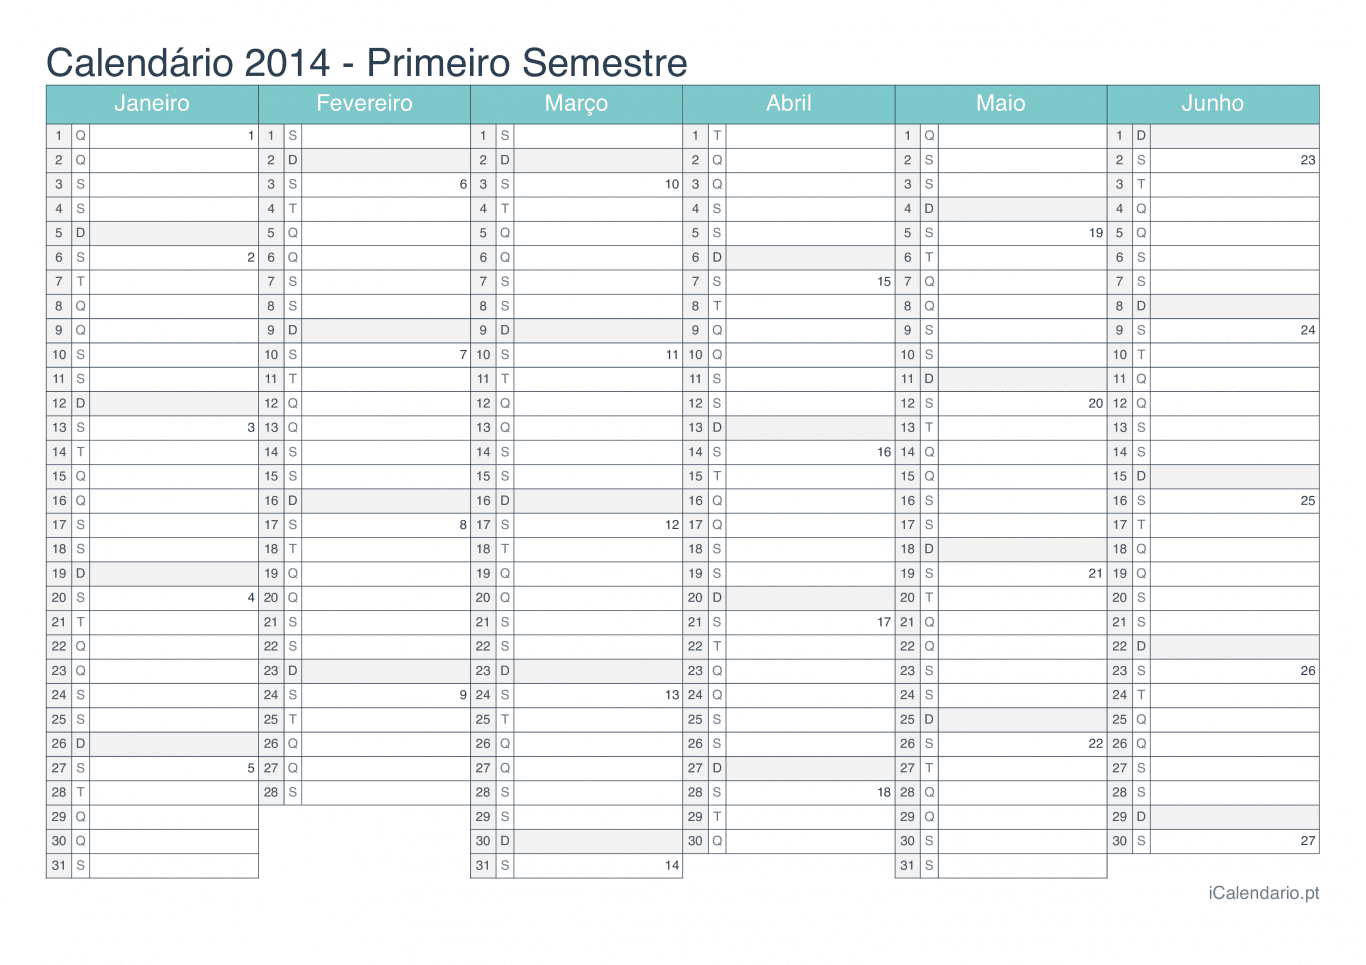 Calendário por semestre com números da semana 2014 - Turquesa